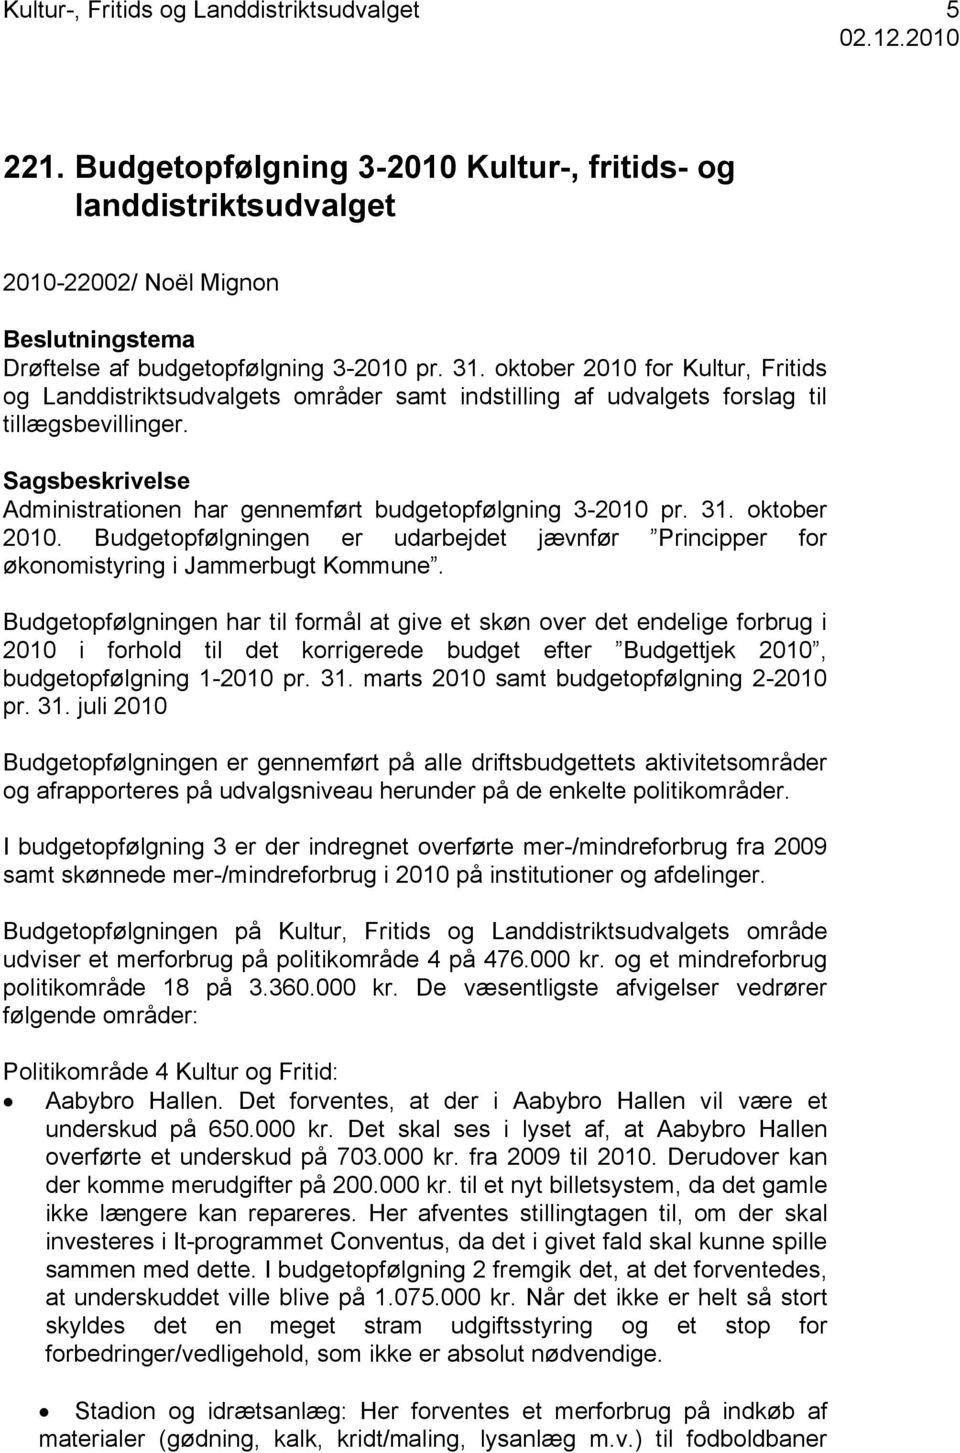 Sagsbeskrivelse Administrationen har gennemført budgetopfølgning 3-2010 pr. 31. oktober 2010. Budgetopfølgningen er udarbejdet jævnfør Principper for økonomistyring i Jammerbugt Kommune.